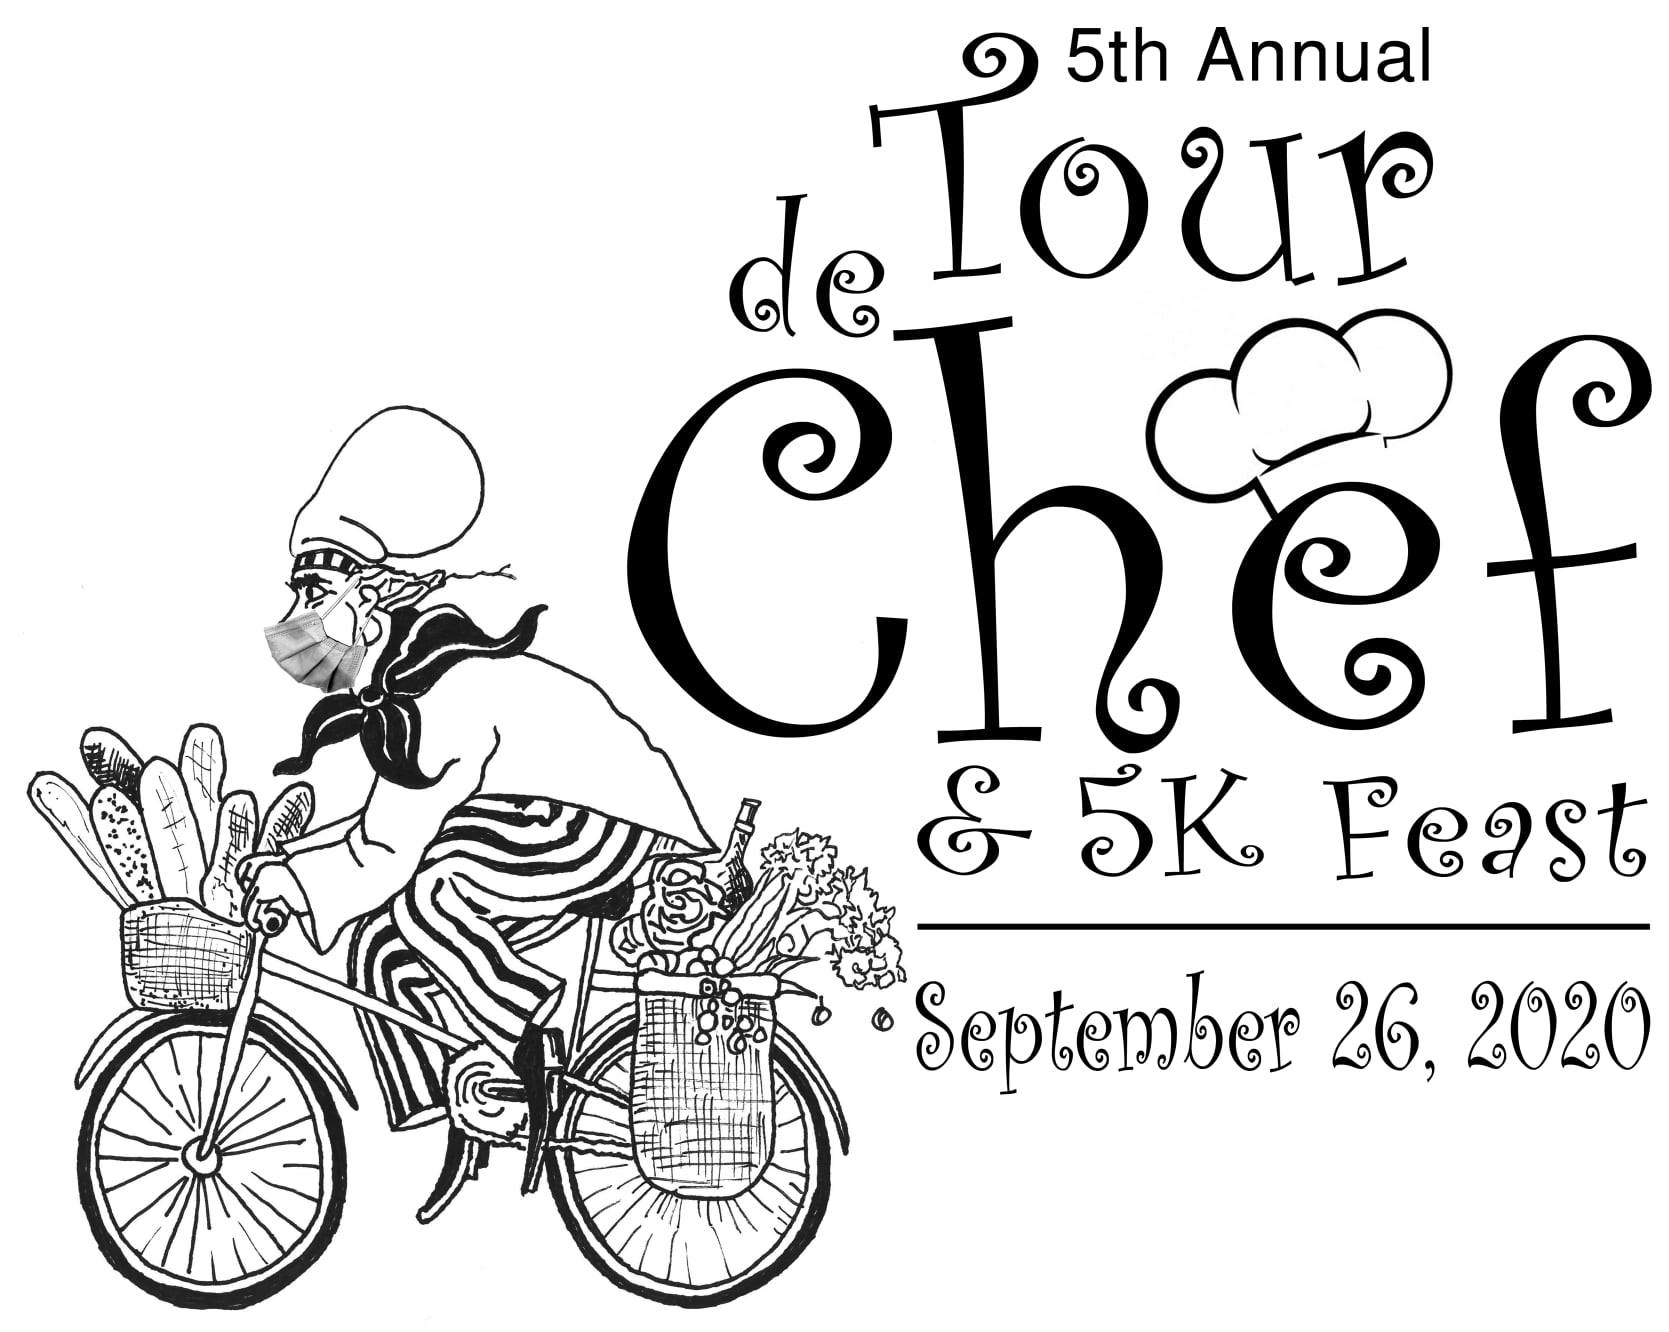 Tour de Chef & 5K Feast (virtual) logo on RaceRaves